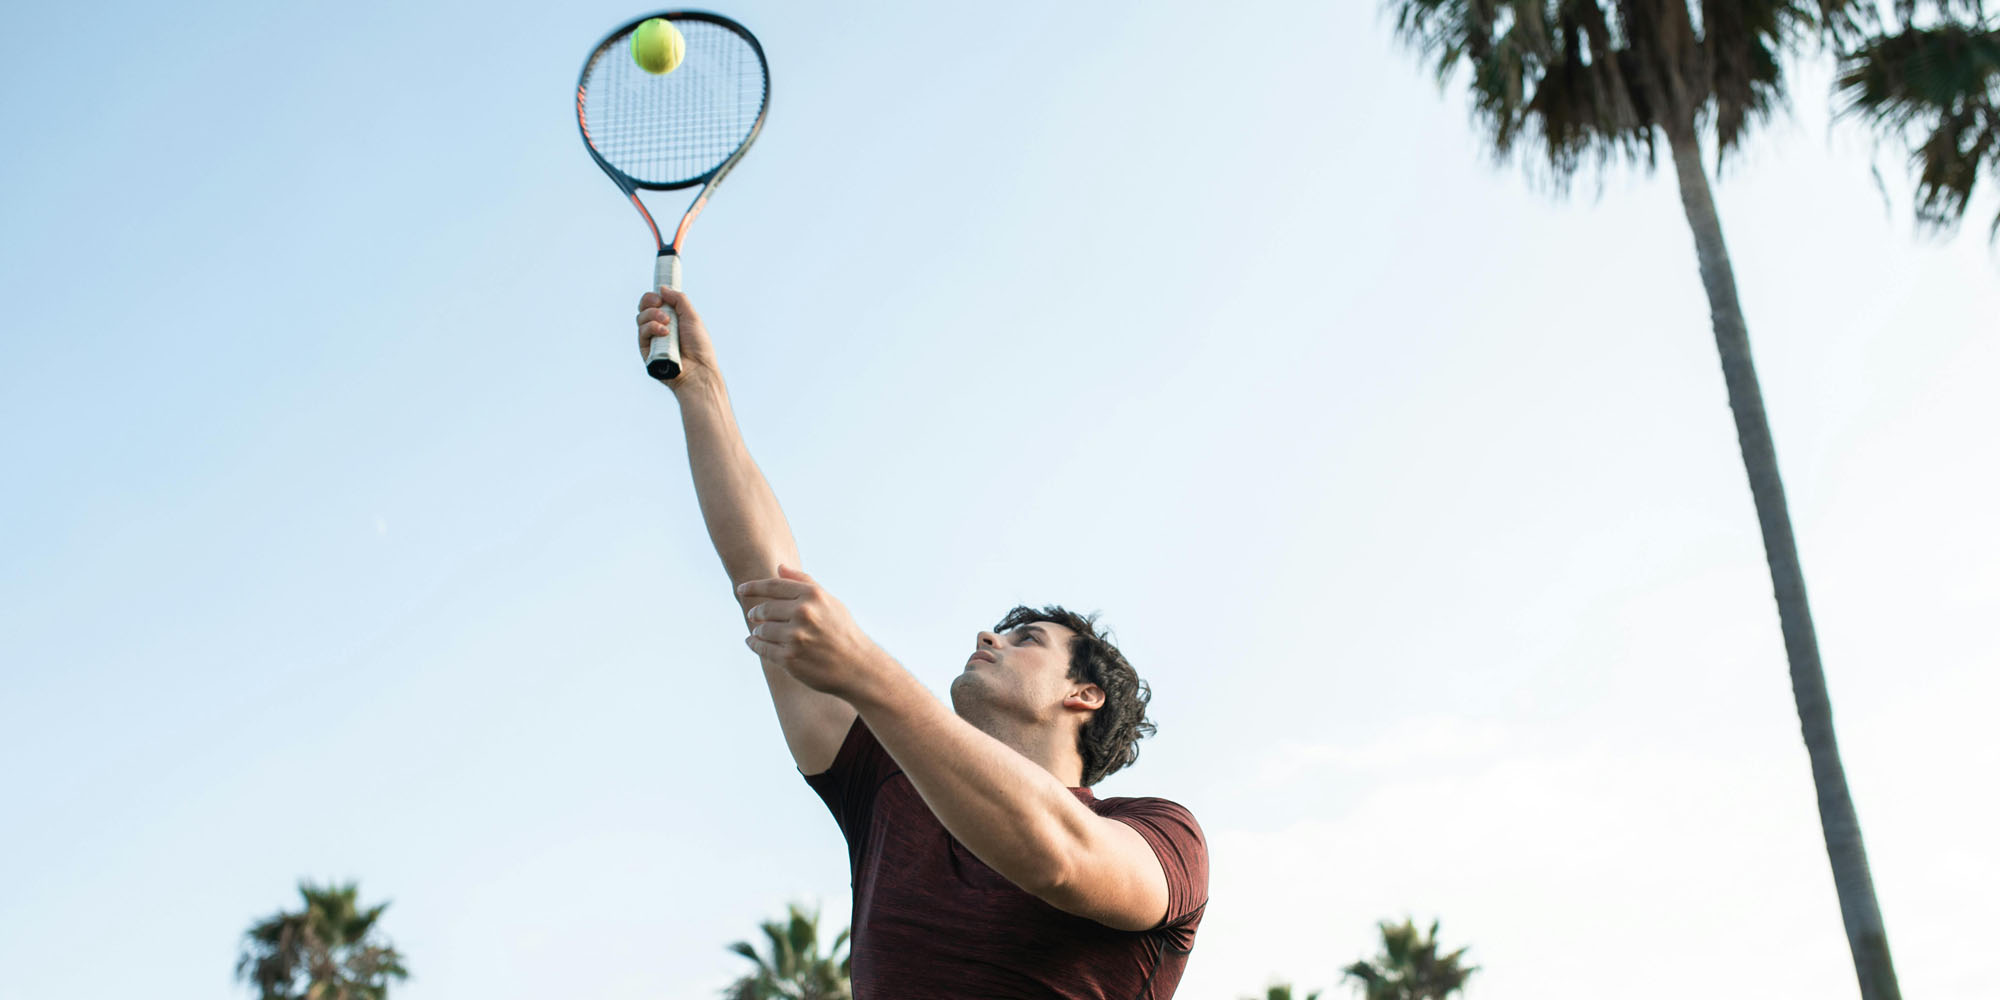 «Солнечный дубль» — одно из самых сложных достижений в теннисе